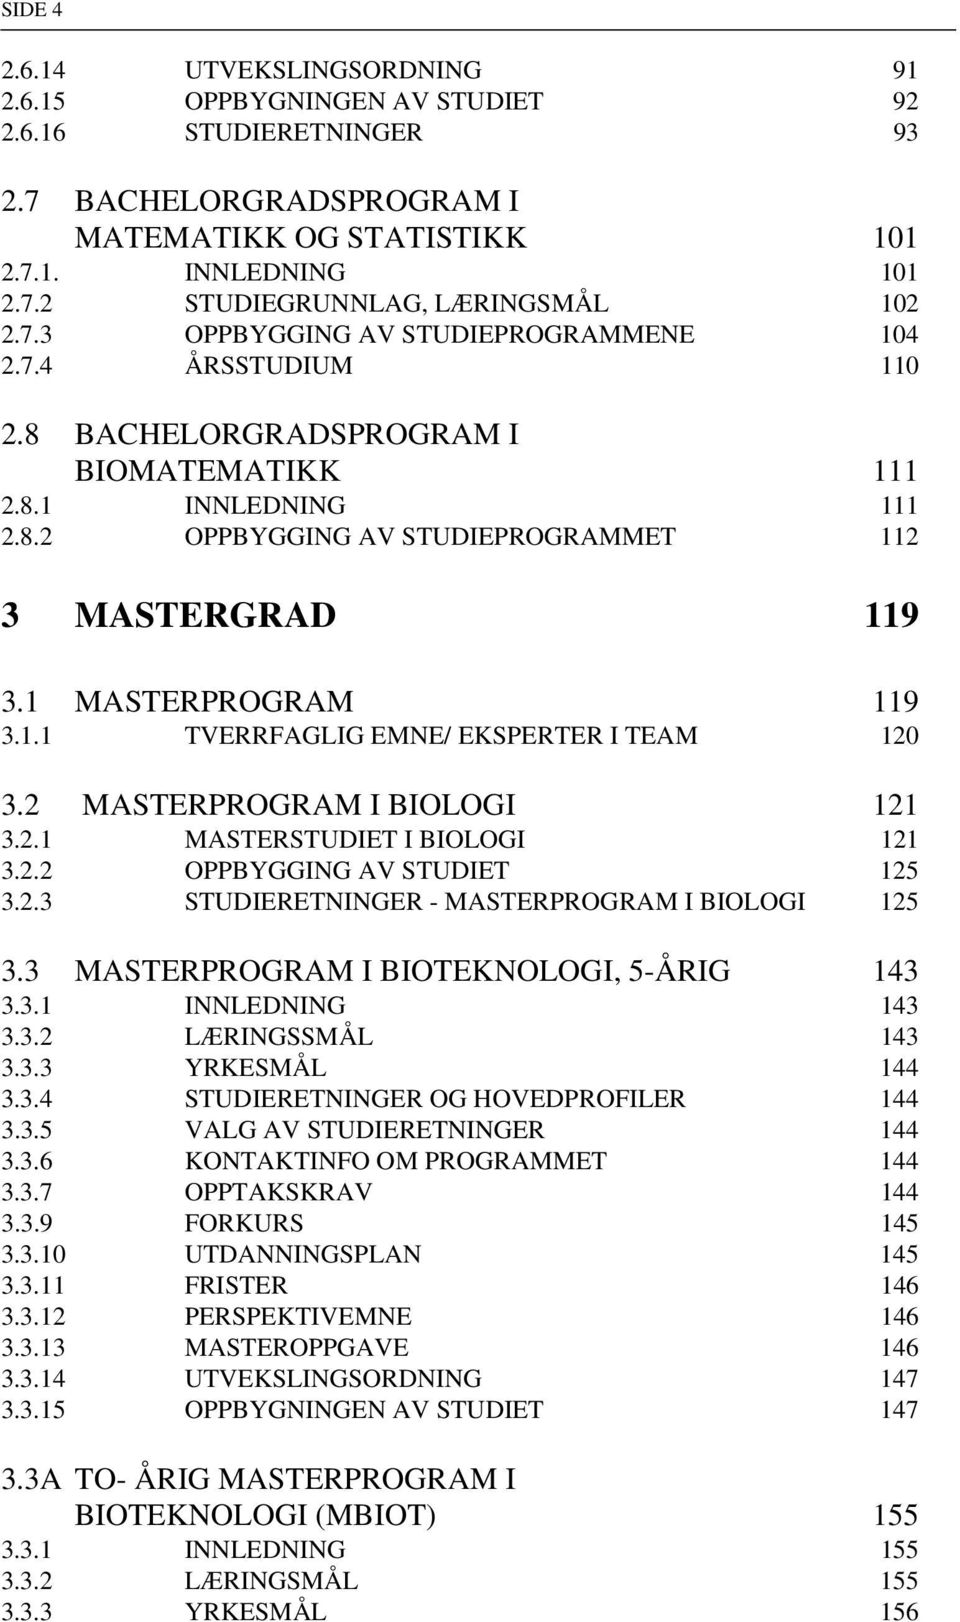 1 MASTERPROGRAM 119 3.1.1 TVERRFAGLIG EMNE/ EKSPERTER I TEAM 120 3.2 MASTERPROGRAM I BIOLOGI 121 3.2.1 MASTERSTUDIET I BIOLOGI 121 3.2.2 OPPBYGGING AV STUDIET 125 3.2.3 STUDIERETNINGER - MASTERPROGRAM I BIOLOGI 125 3.